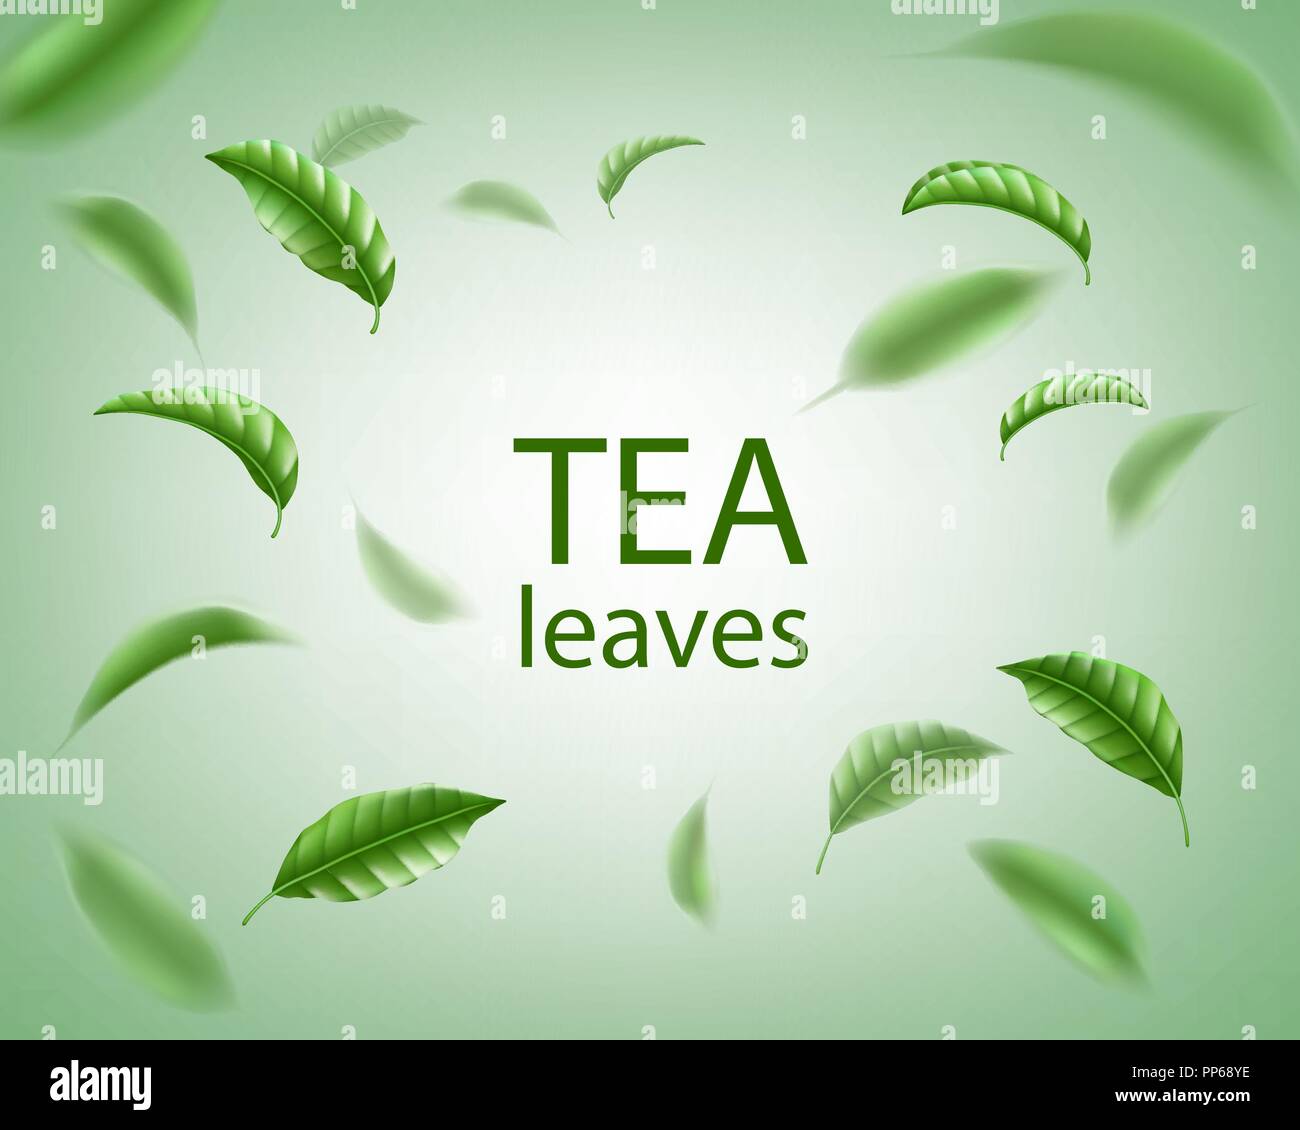 Grüner Tee Hintergrund. Realistische Tee Blätter Wirbeln in der Luft. Florale Elemente für Design, Werbung, Verpackung. Vector Illustration. Stock Vektor